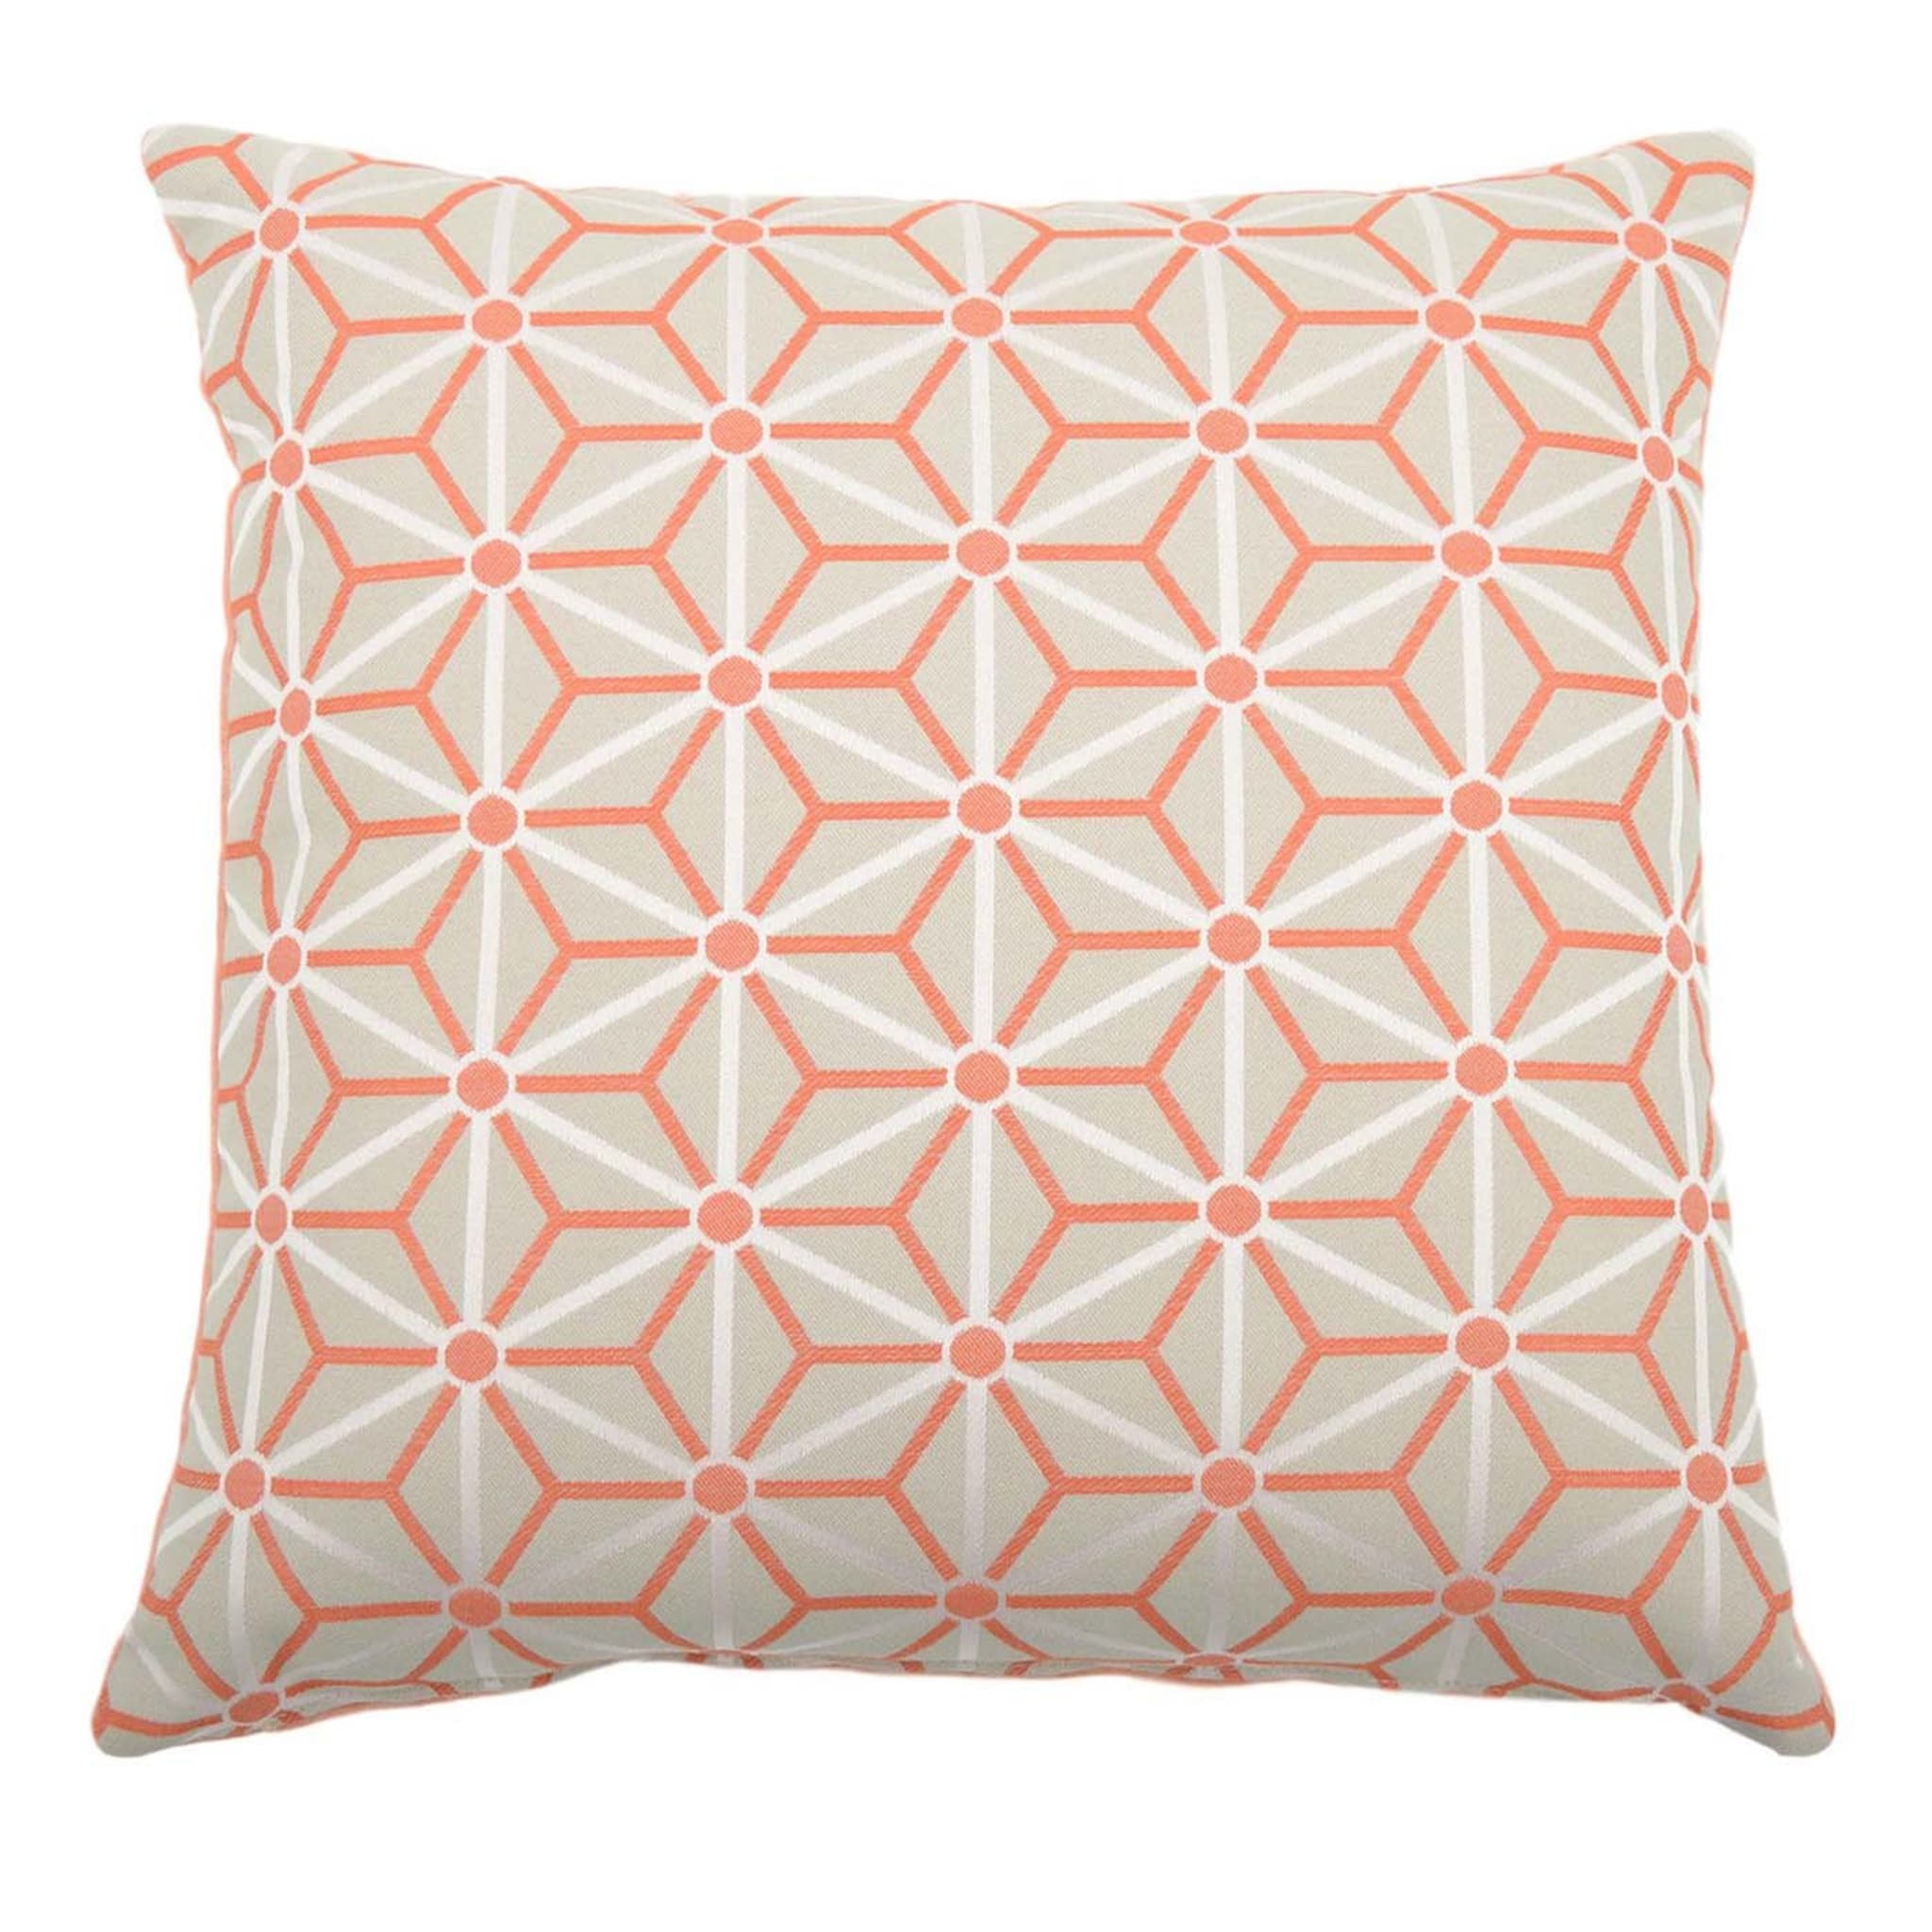 Peach Carrè Cushion in Steila jacquard fabric - Main view